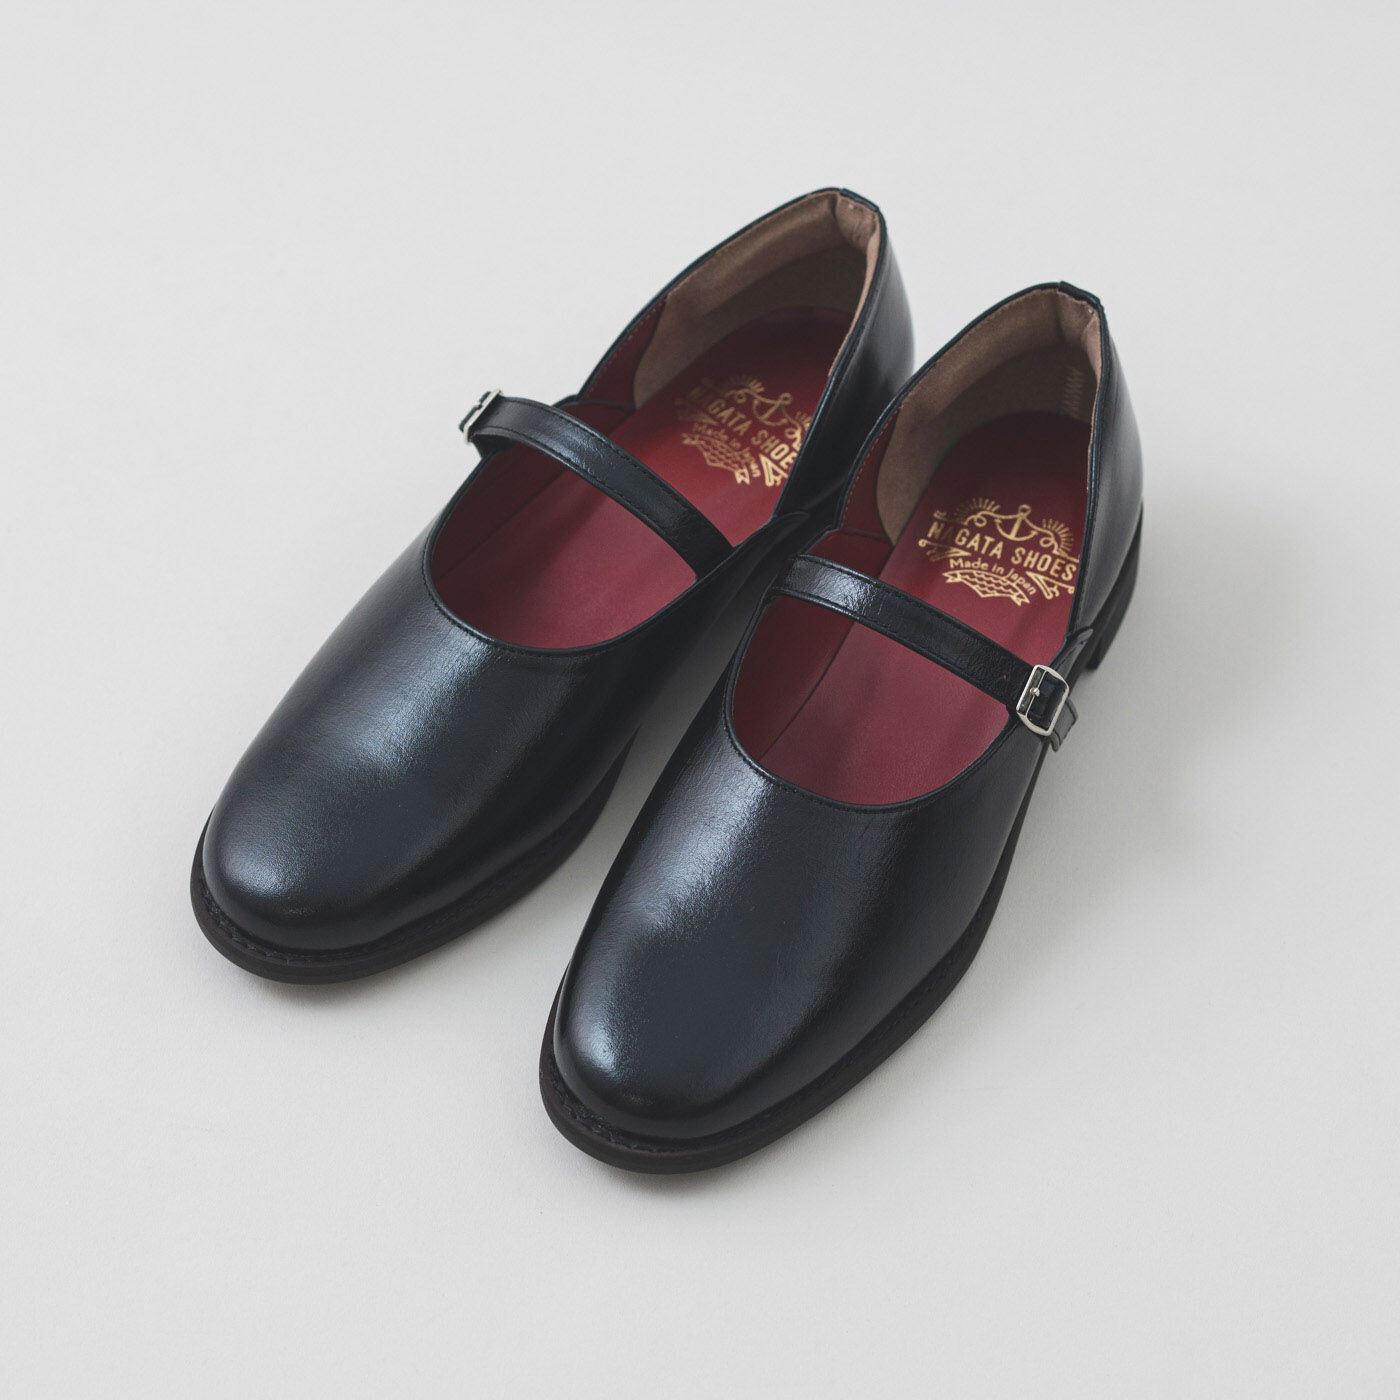 ＆Stories|靴デザイナーの理想で作った 職人本革のレジェルテシューズ〈ブラック〉|細身に見えて、実は幅広・甲高の足もすっぽり包み、フィットします。